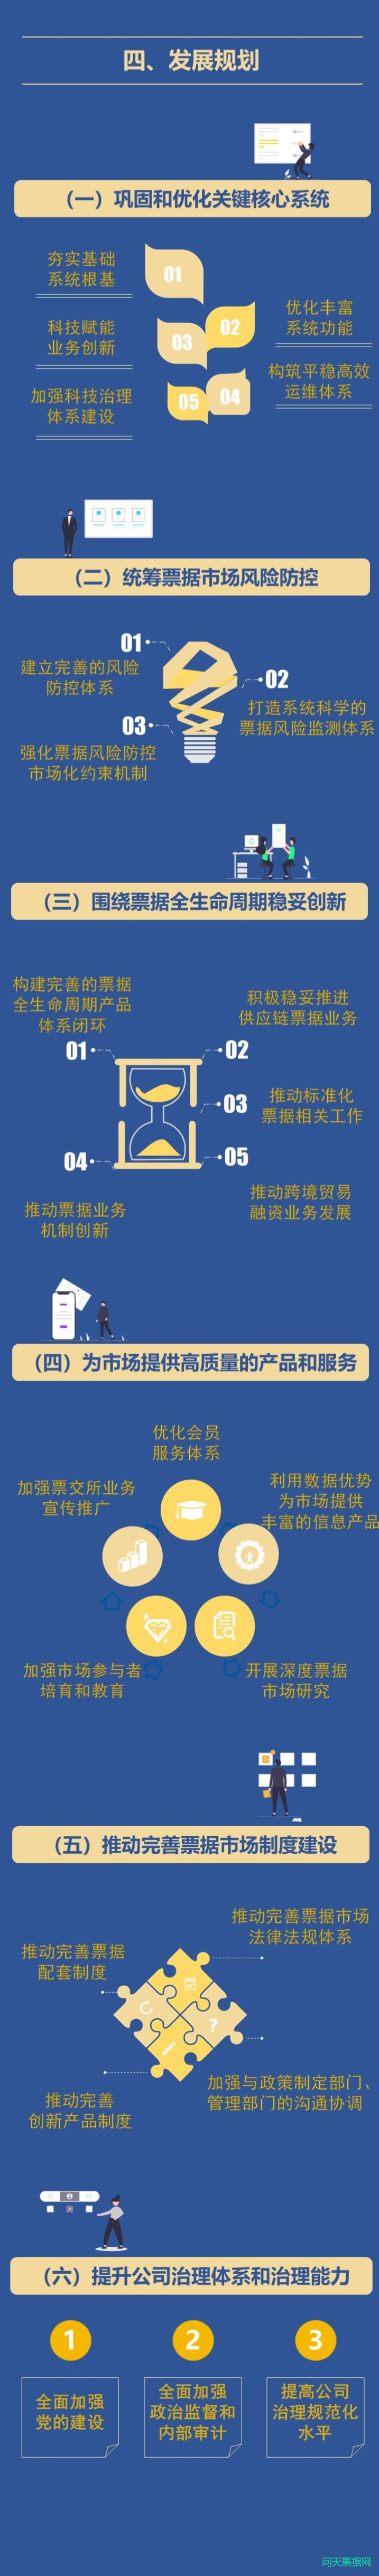 一图读懂上海票据交易所近三年发展规划